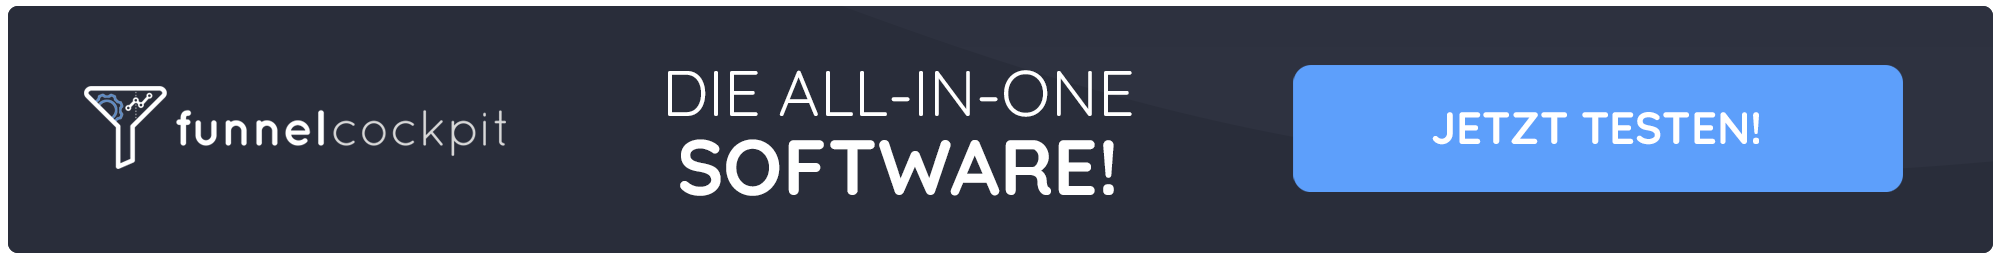 Die neue All-in-One Software für dein Onlinebusiness!